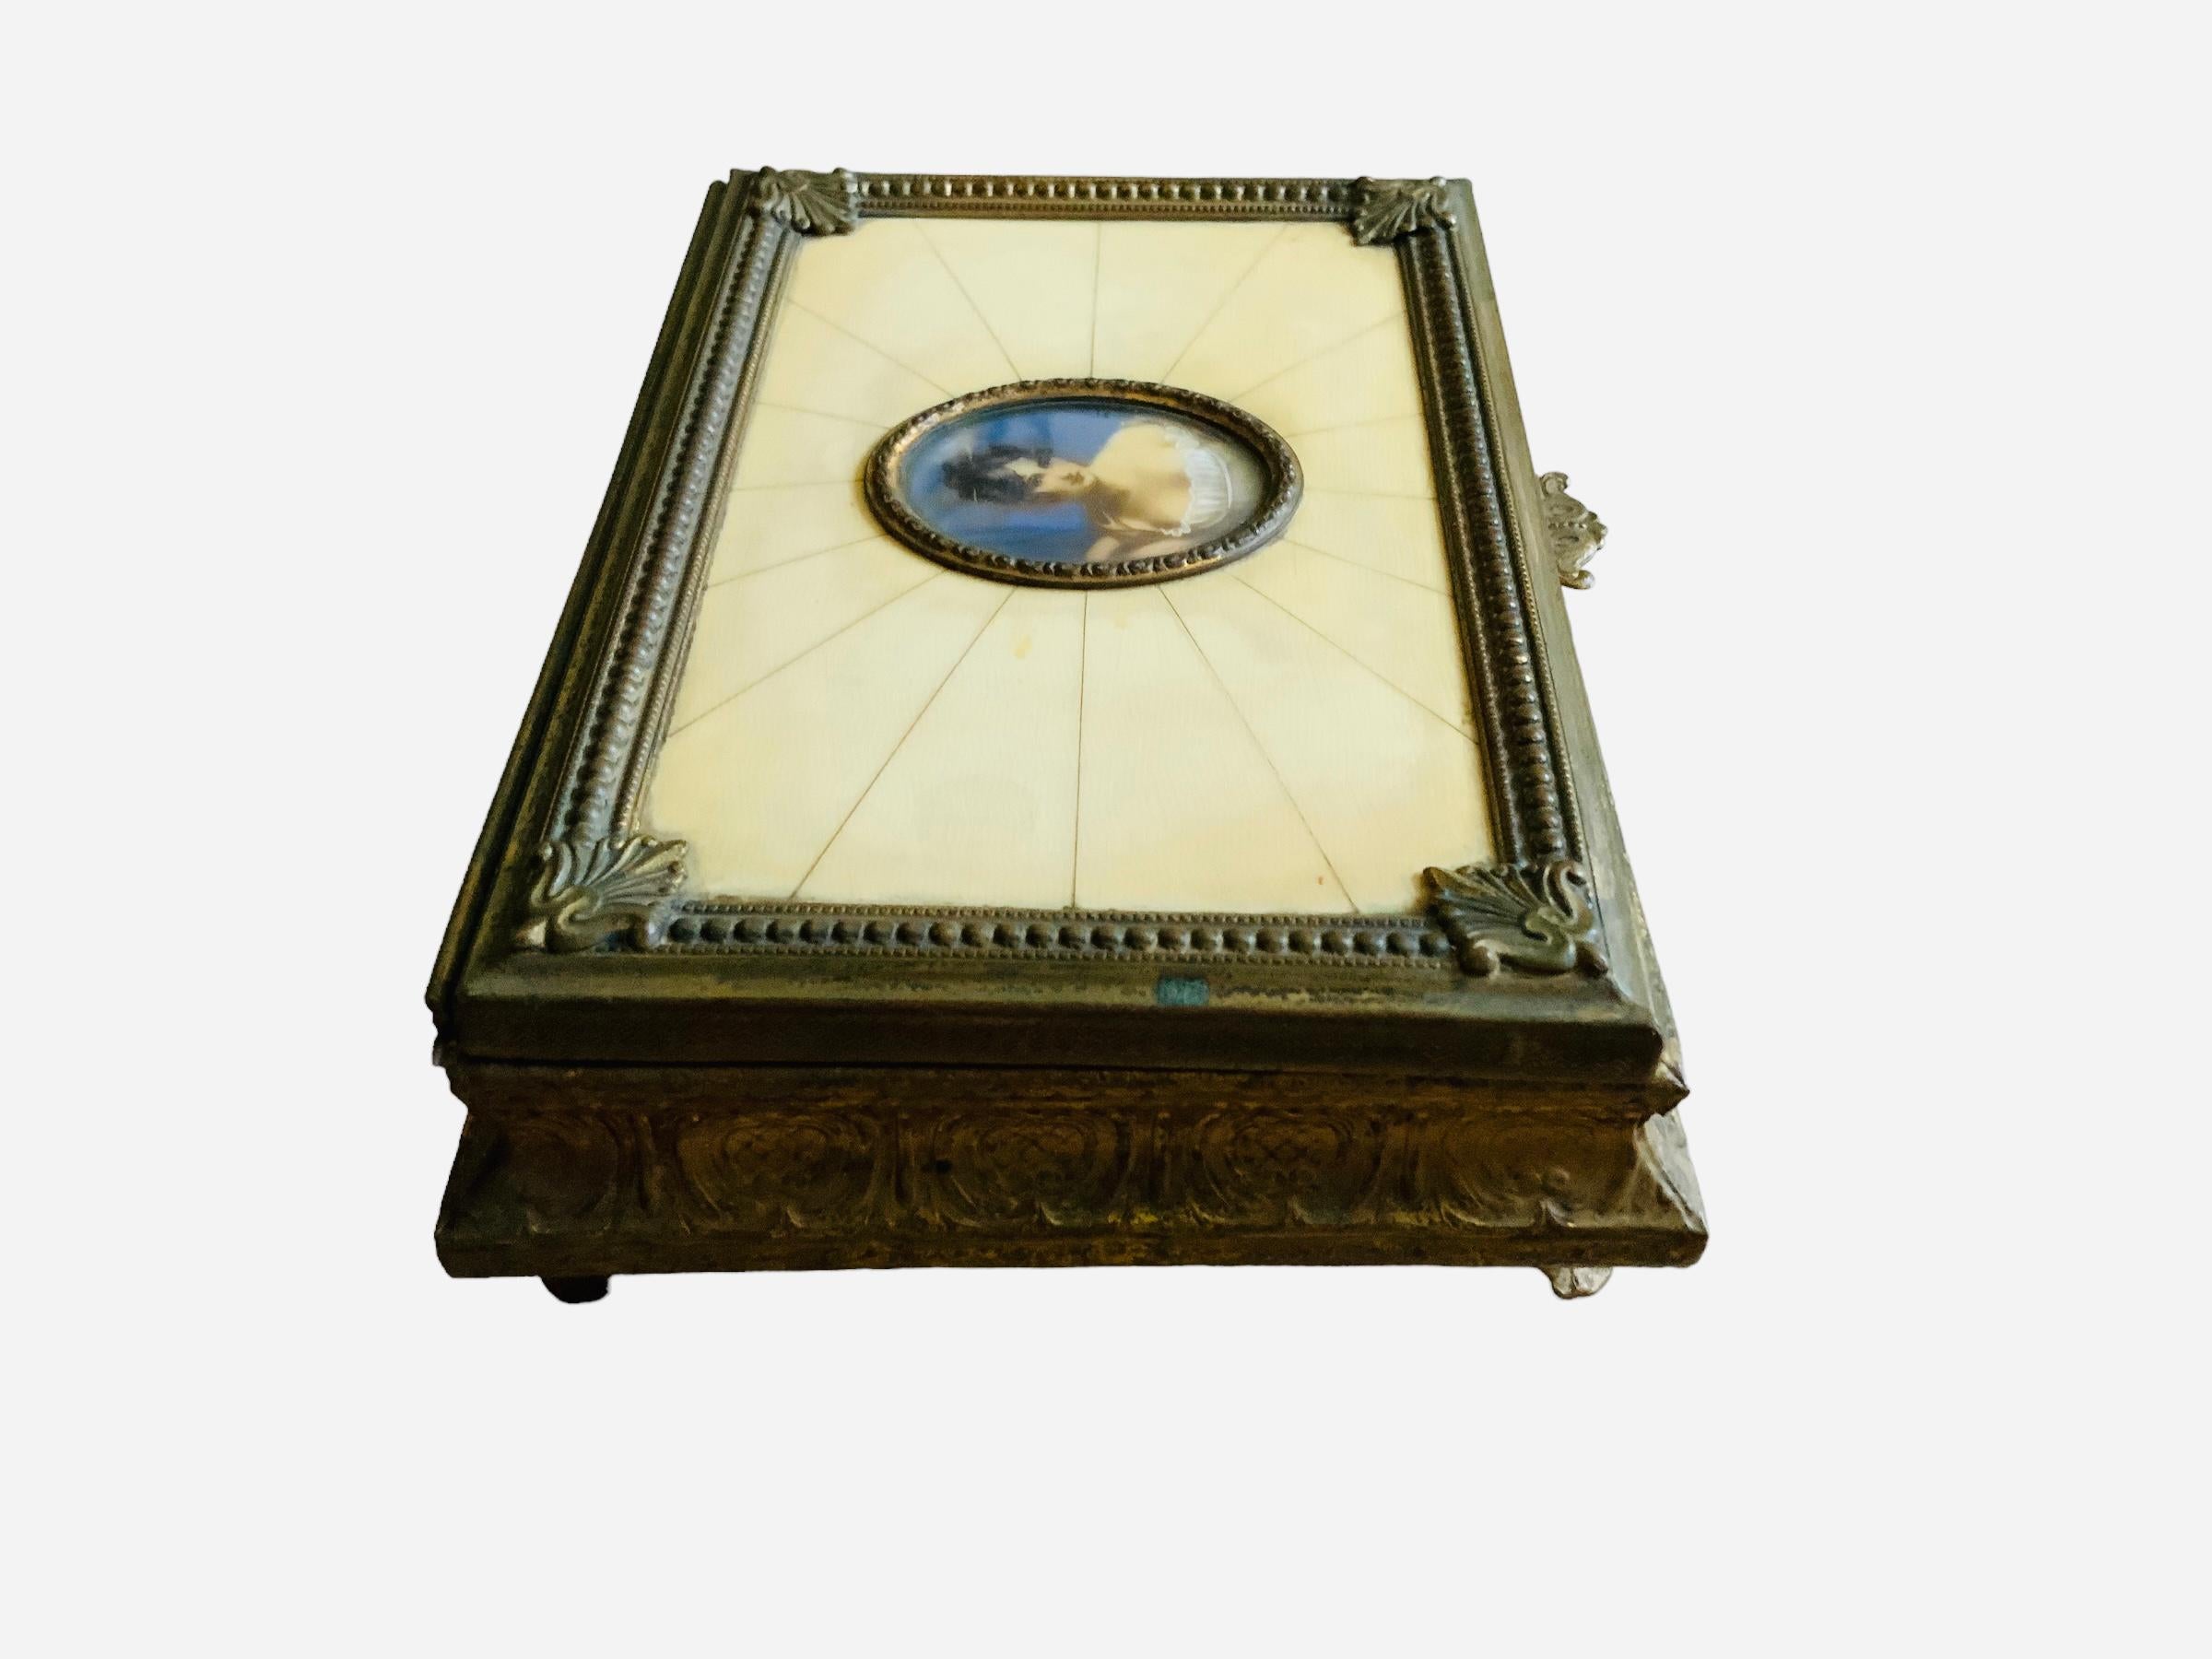 Dies ist eine italienische Spieluhr aus bronziertem Metall mit quadratischem Klappdeckel. Es zeigt einen Deckel, der in der Mitte mit einem handgemalten Porträt von Madame Recamier aus dem 19. Jahrhundert verziert ist und einen ovalen Rahmen aus